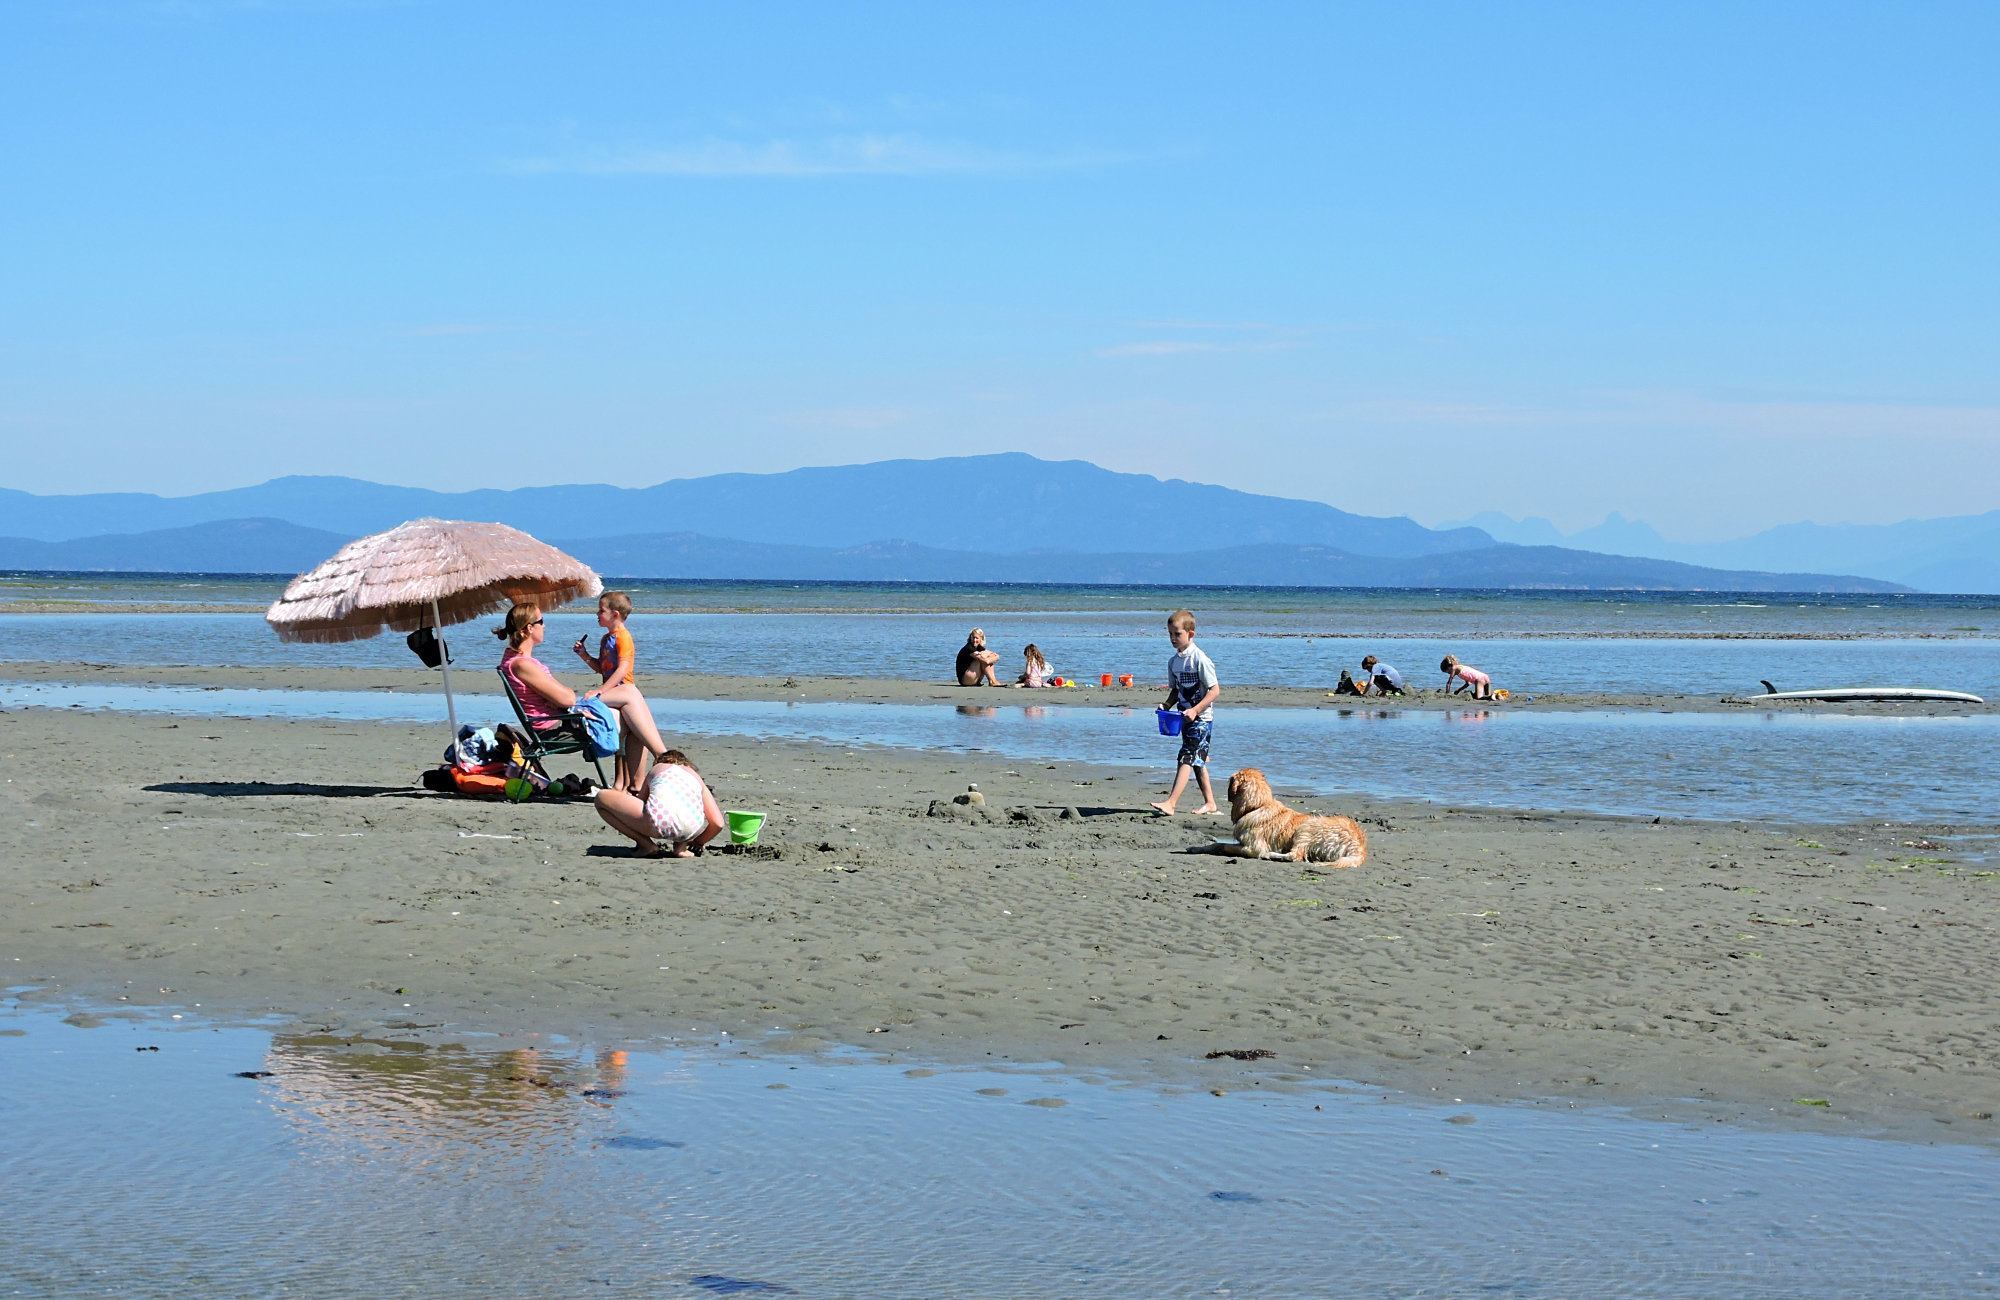 Vancouver Island beaches